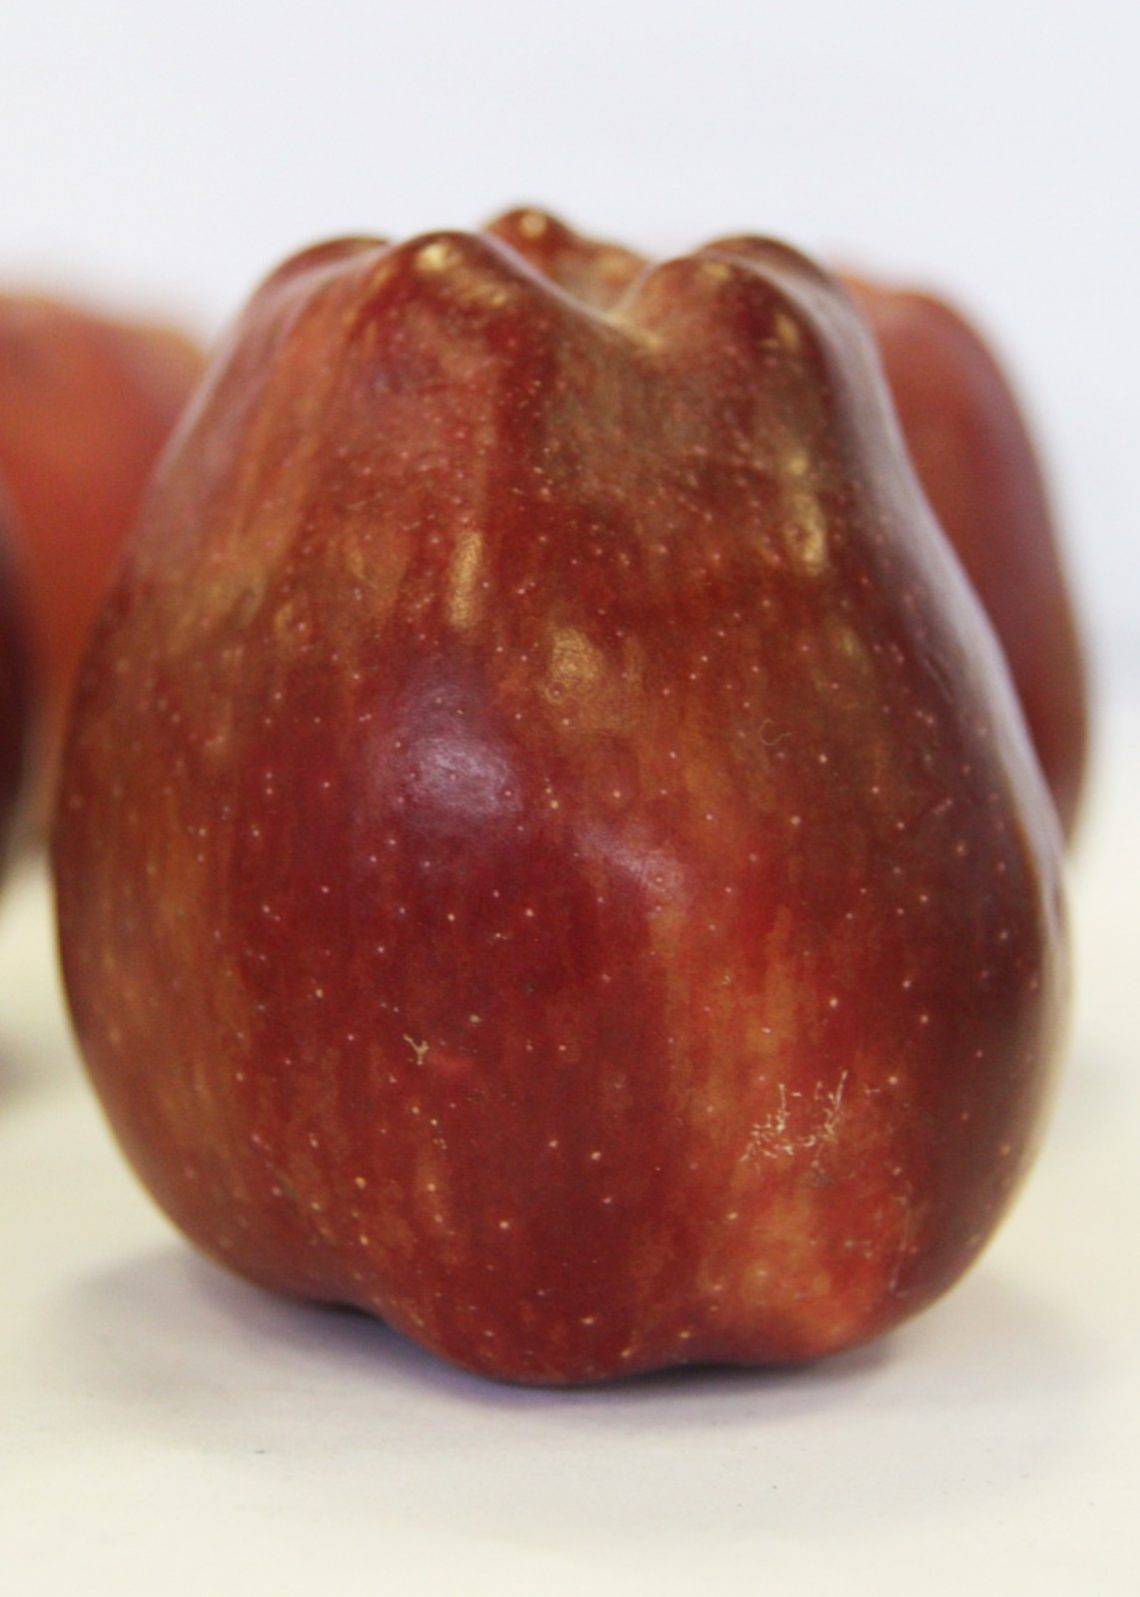 Яблоня ред чиф: сортовые характеристики и особенности выращивания